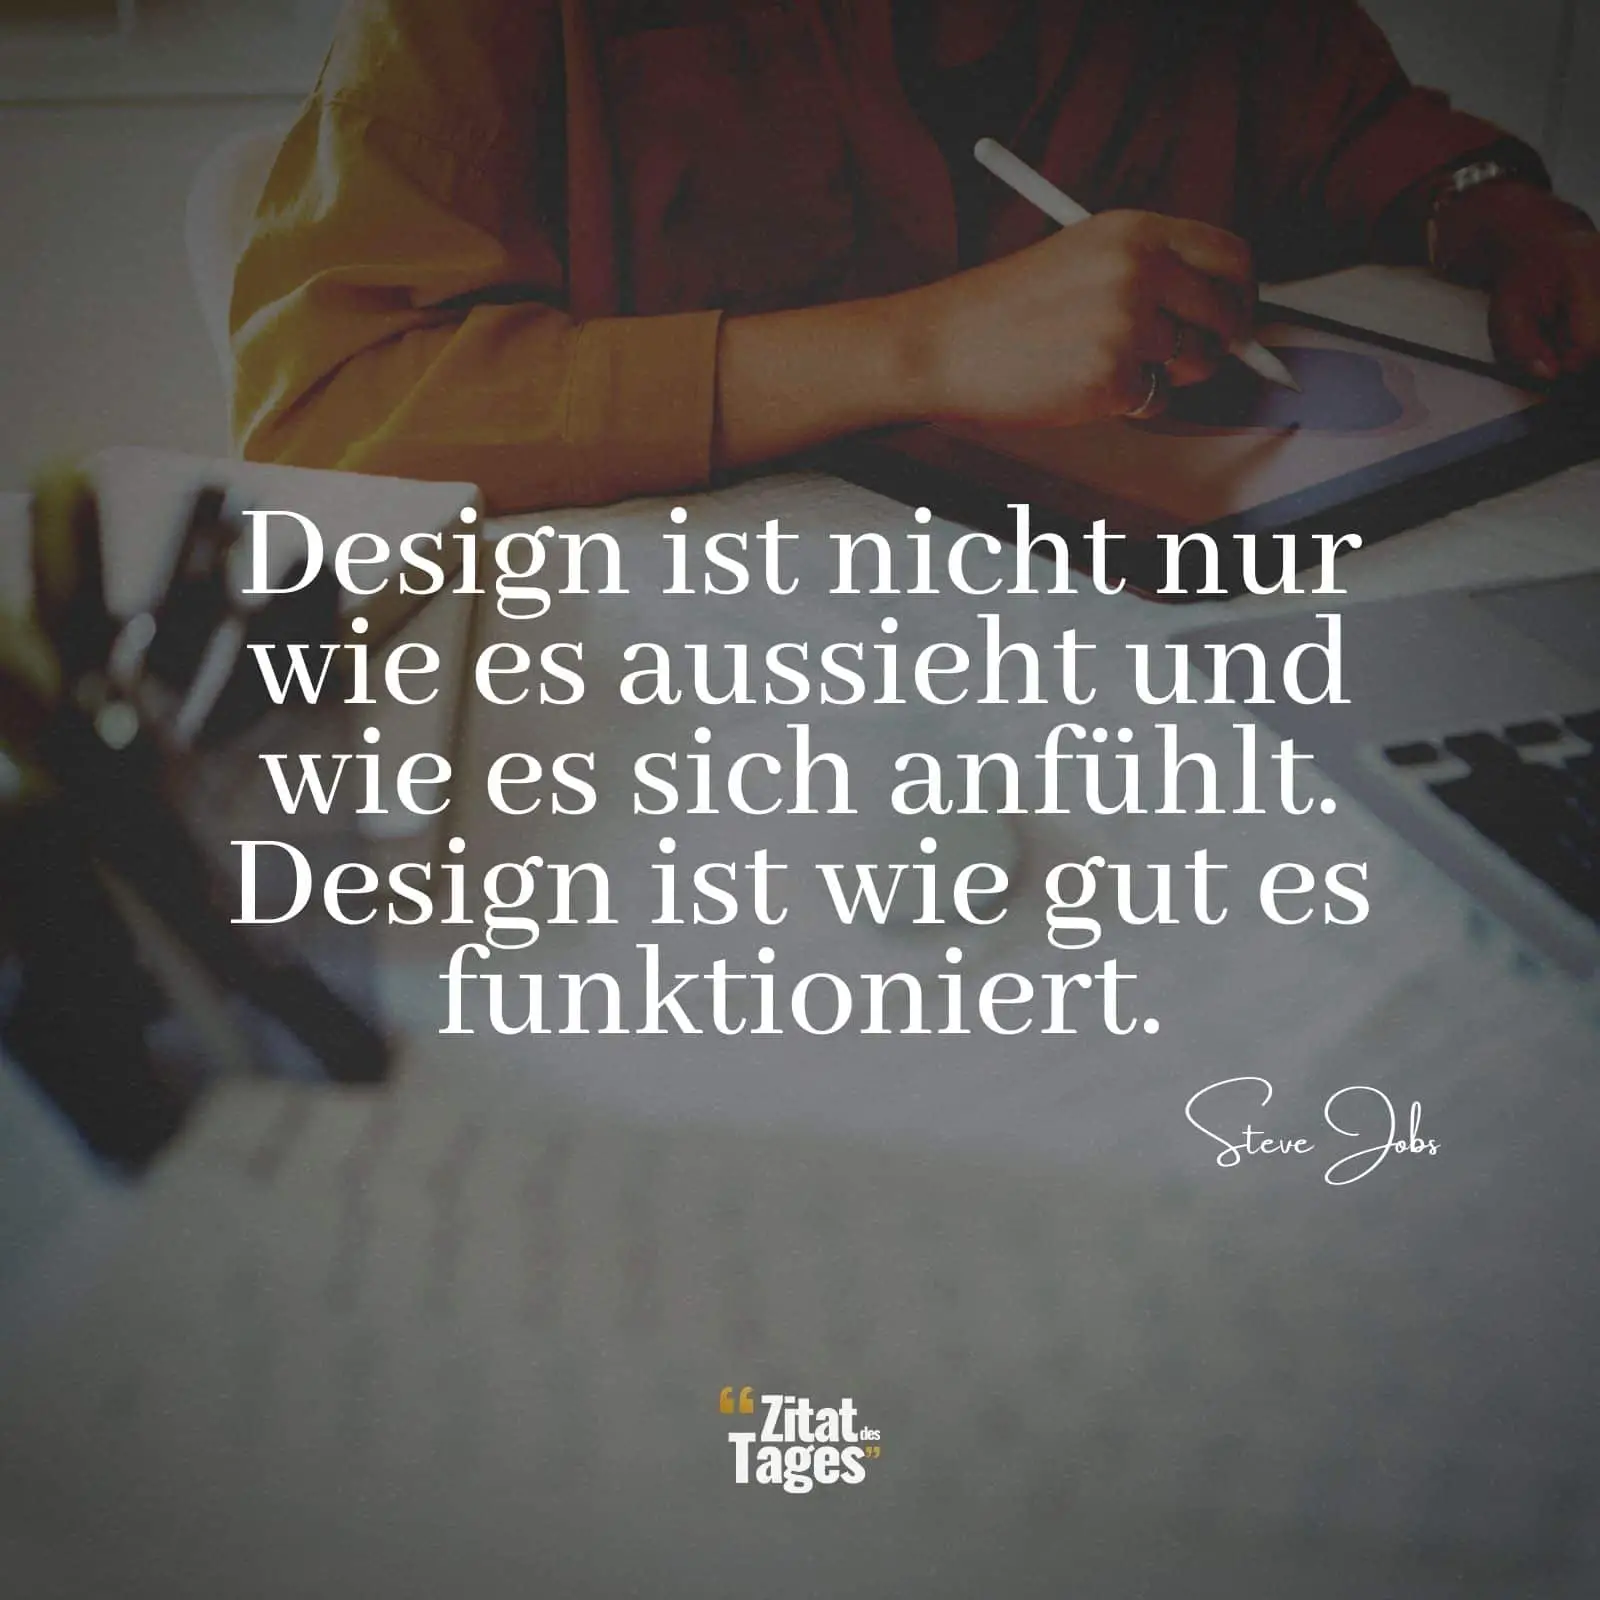 Design ist nicht nur wie es aussieht und wie es sich anfühlt. Design ist wie gut es funktioniert. - Steve Jobs